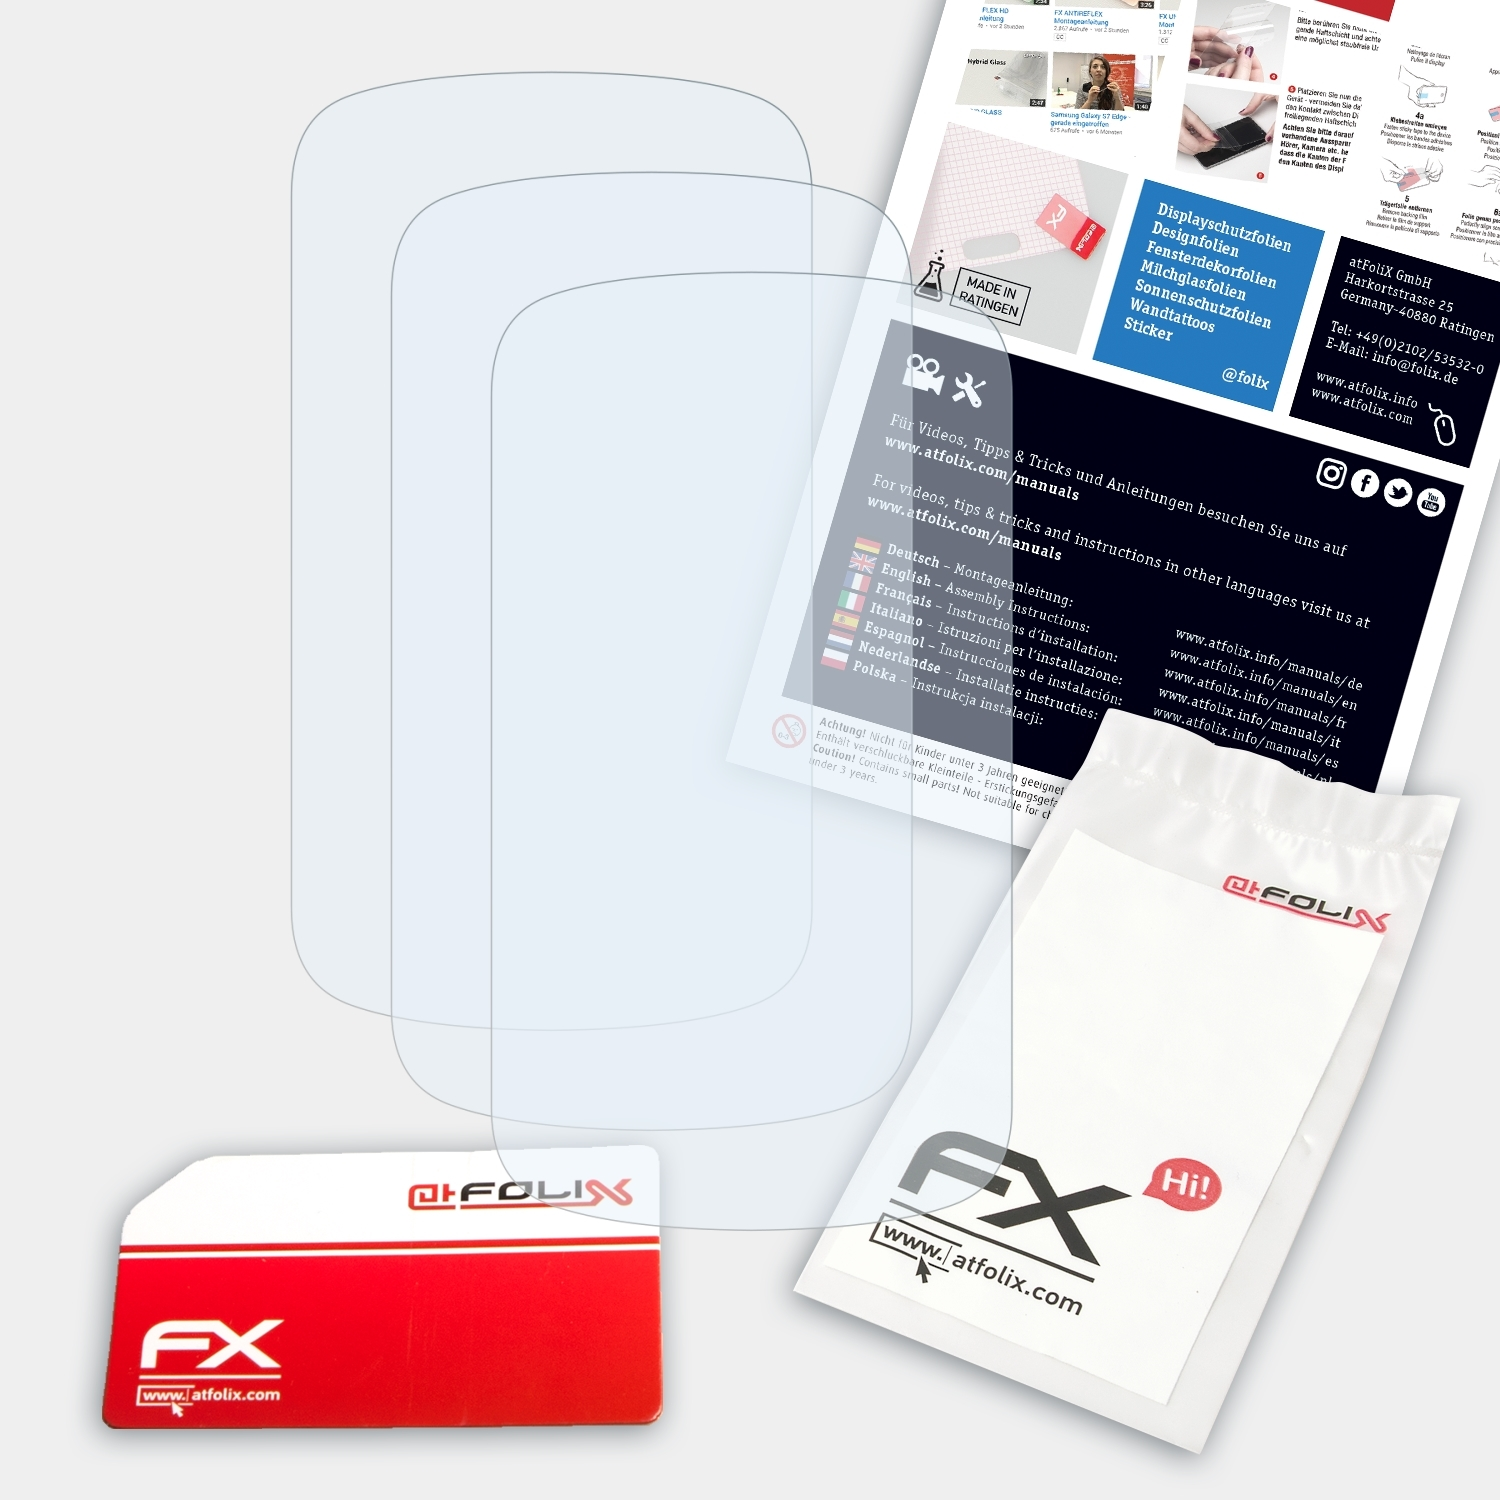 ATFOLIX 3x FX-Clear Displayschutz(für Mio Cyclo 400)